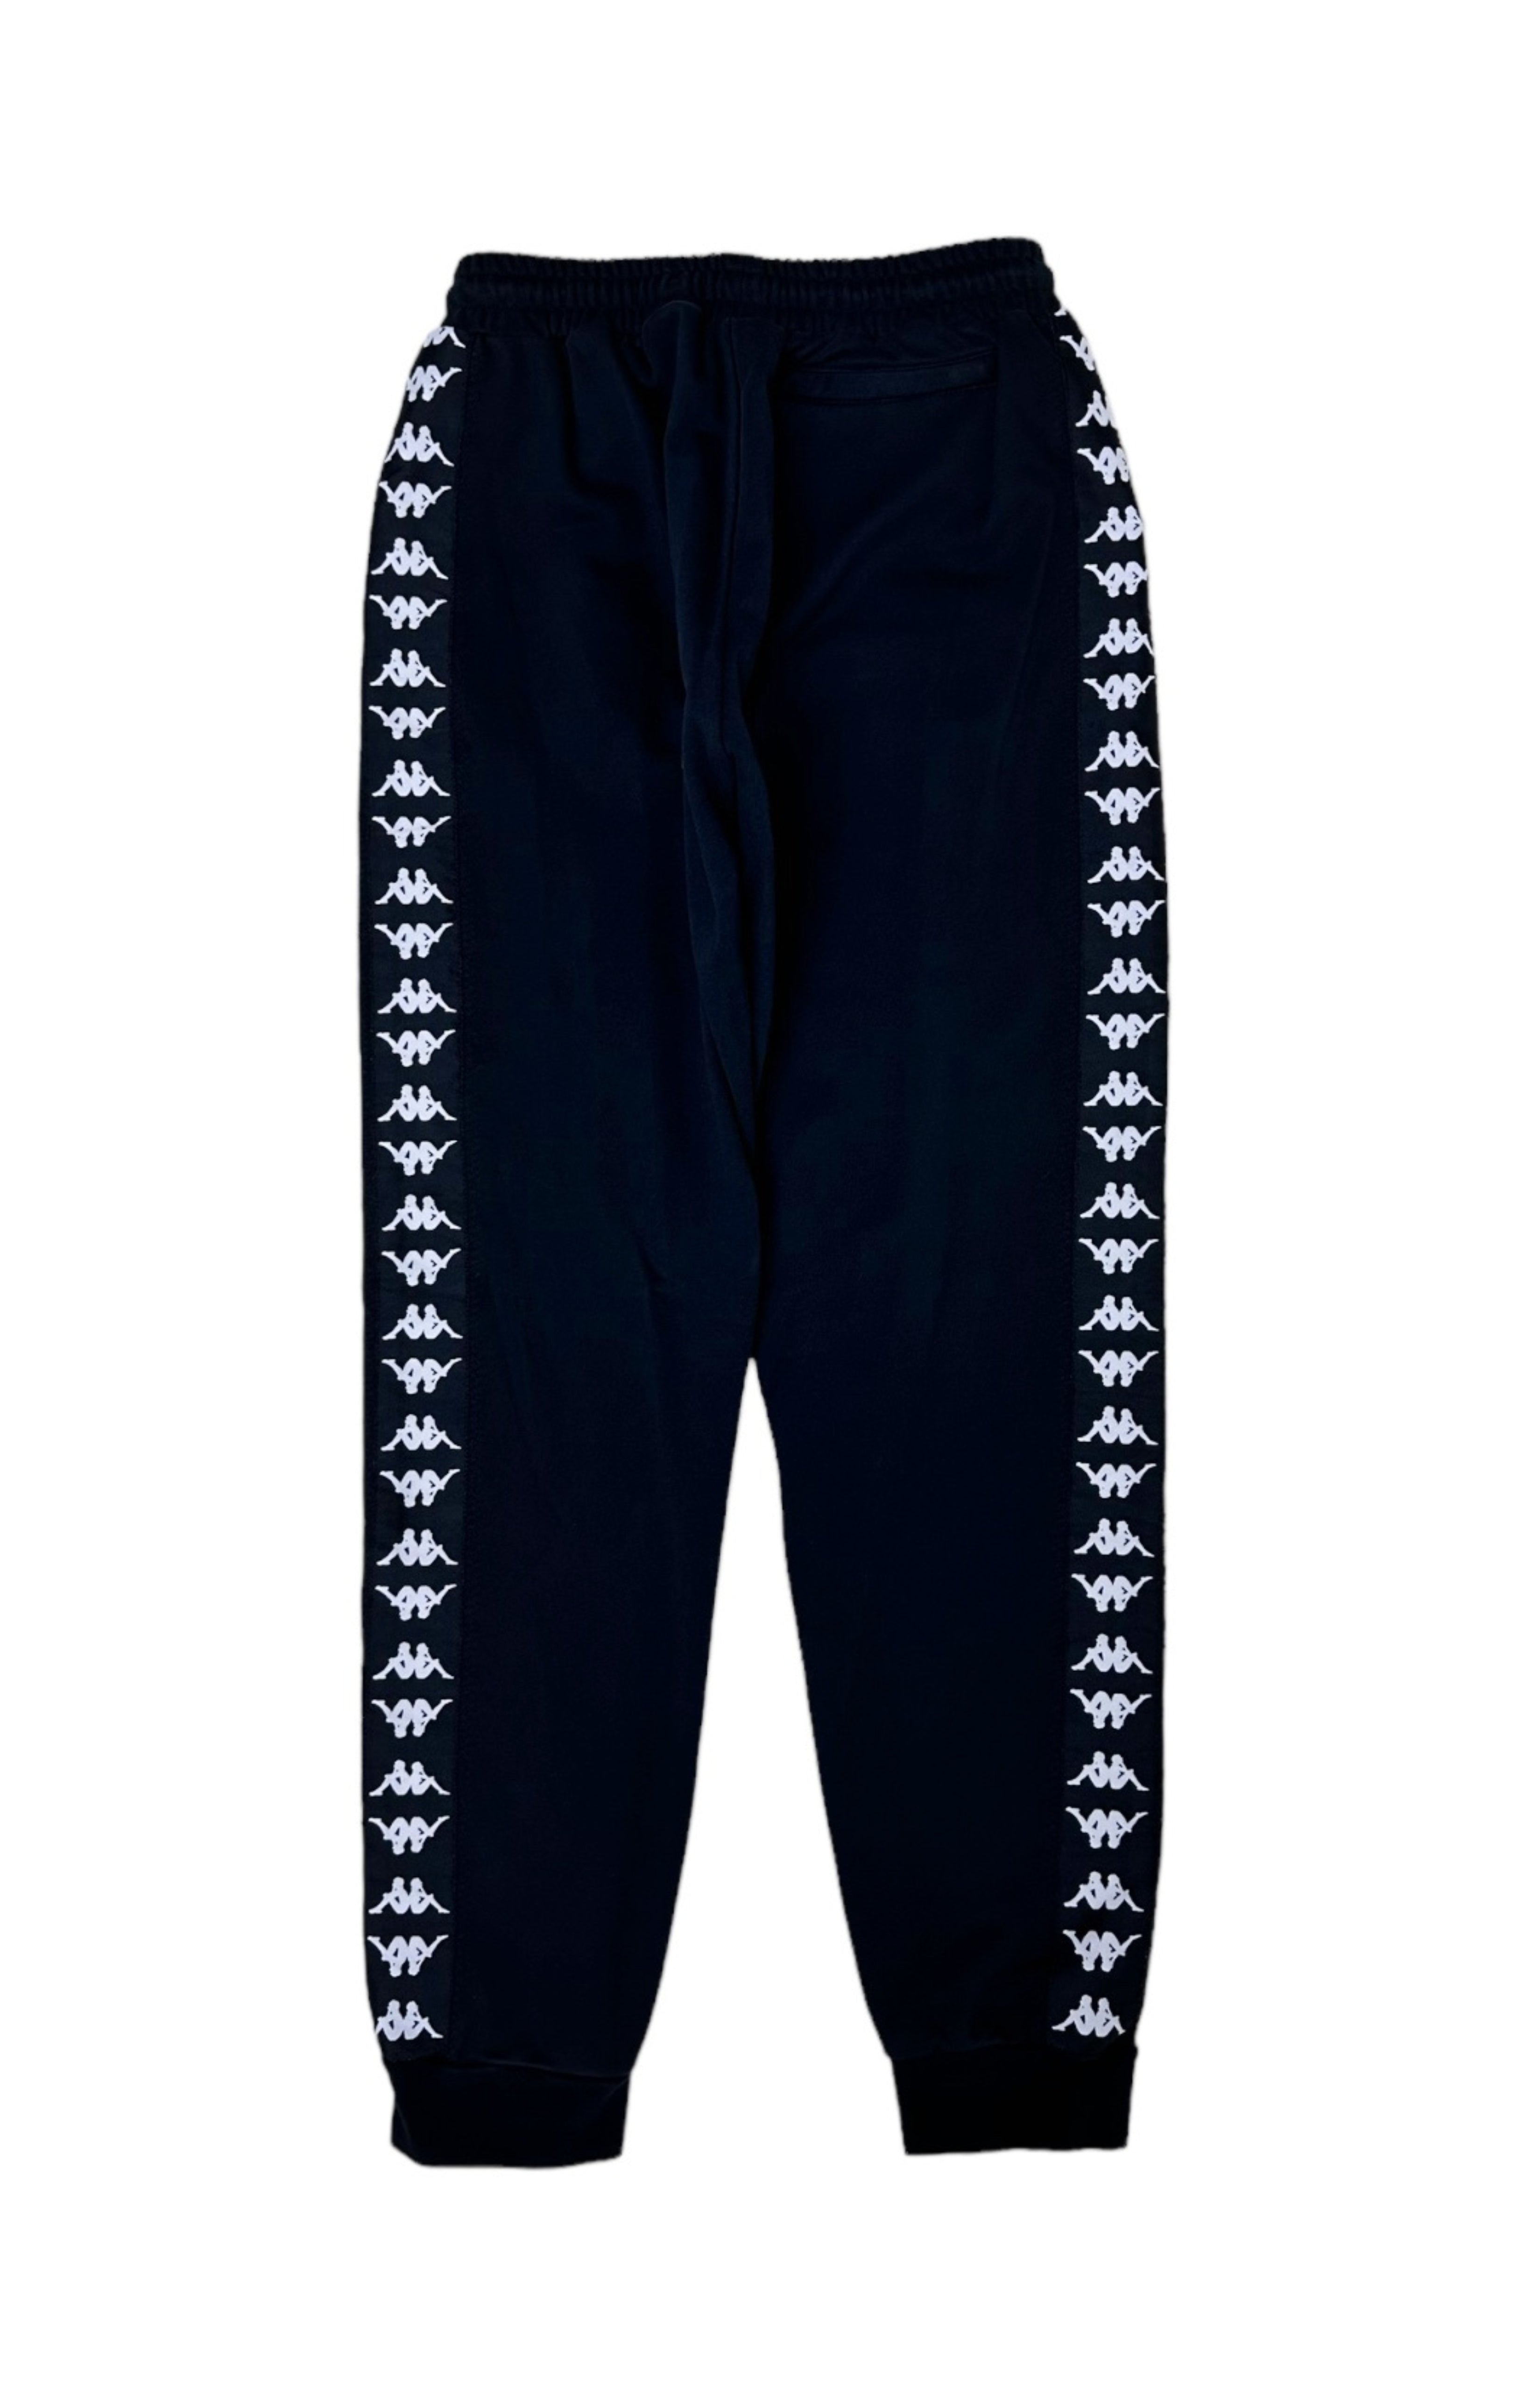 KAPPA (RARE) Sweatpants Size: Marked L Fits like Youth XL-1X